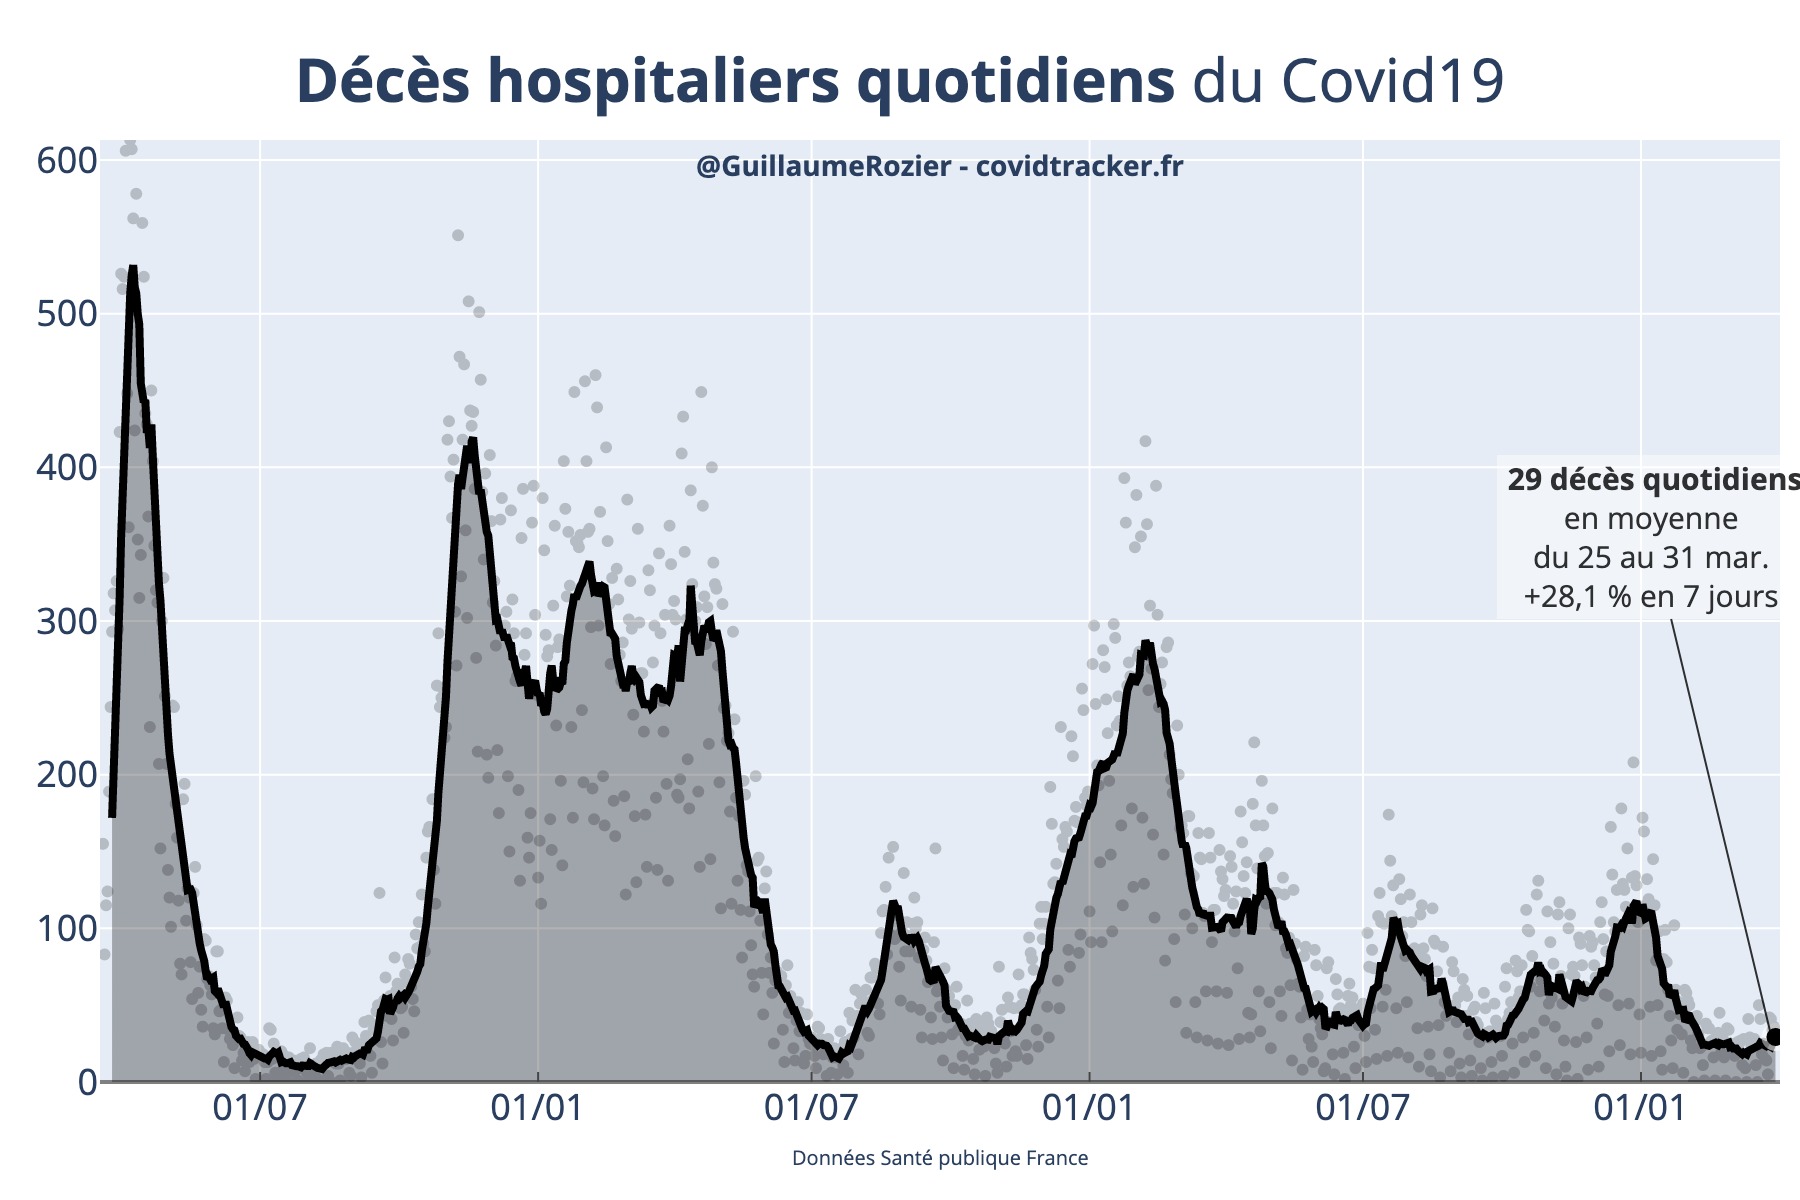 Nombre de décès quotidiens de COVID-19 direct à l'hôpital en France, actualisé quotidiennement par Guillaume Rozier depuis les données fournies par Santé Publique France (Crédit : Guillaume Rozier pour covidtracker.fr)